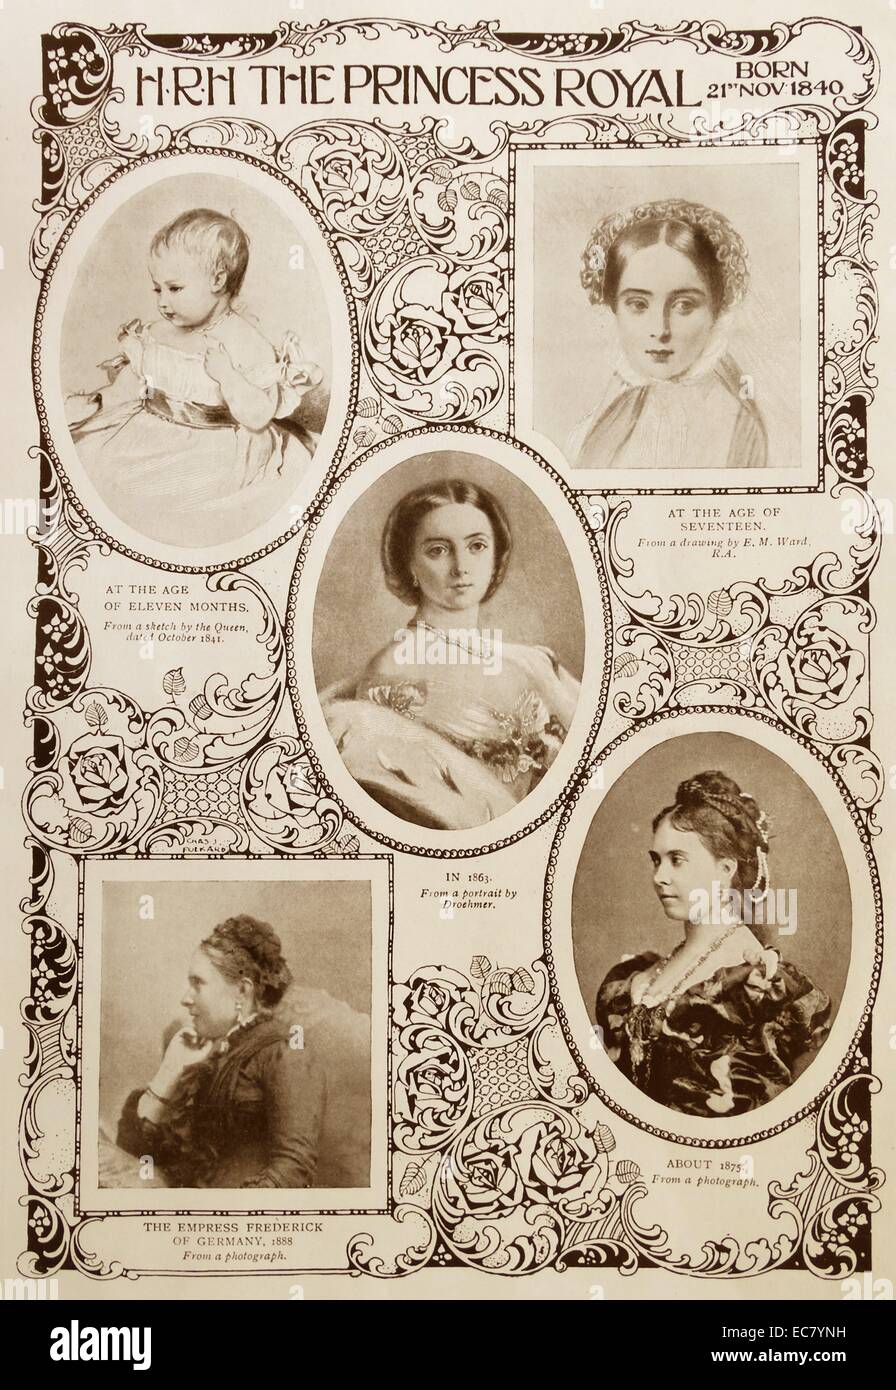 Montaggio di ritratti di Victoria; Princess Royal (1840 - 5 agosto 1901) il bambino più anziano della regina Victoria del Regno Unito e il Principe Albert. Ella divenne il tedesco imperatrice dal matrimonio di imperatore tedesco Federico III. Foto Stock